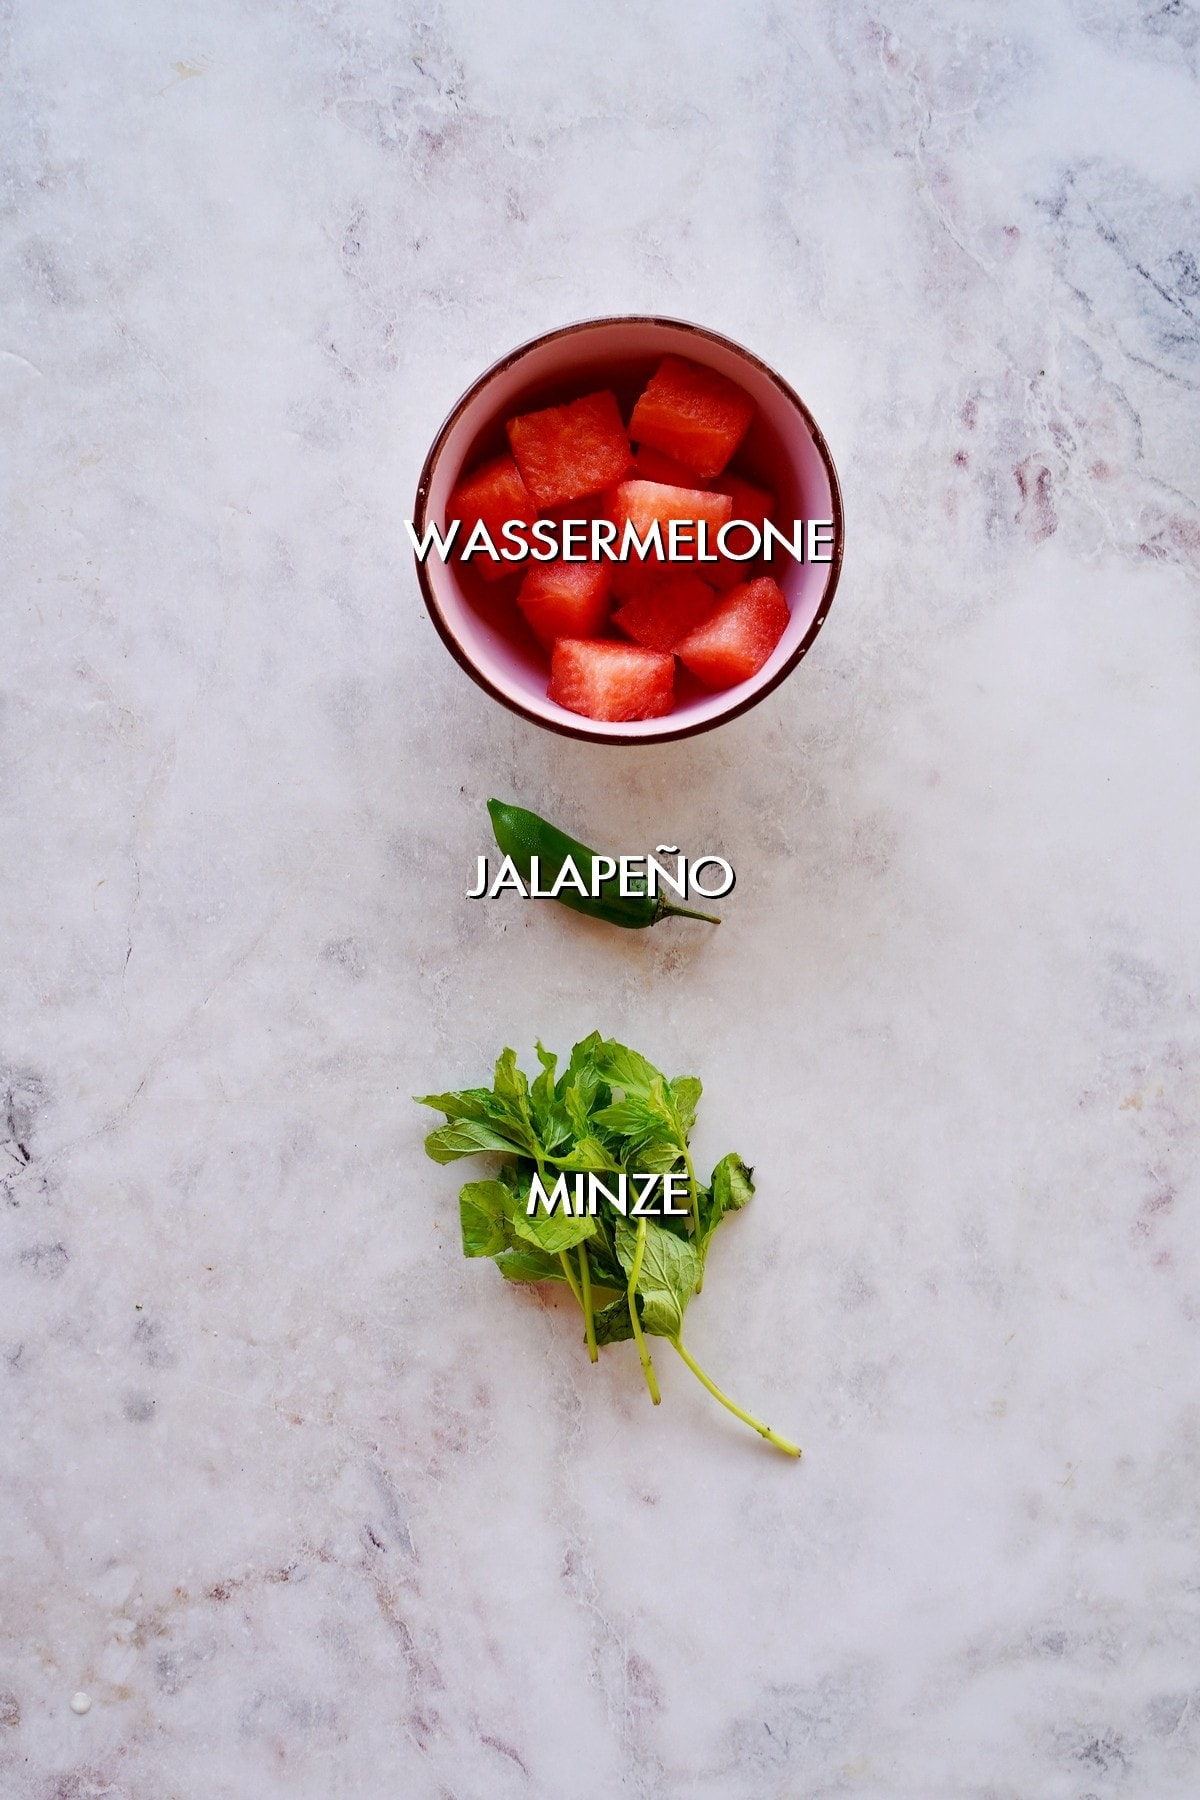 Wassermelone, Jalapeño, Minze auf weißem Hintergrund